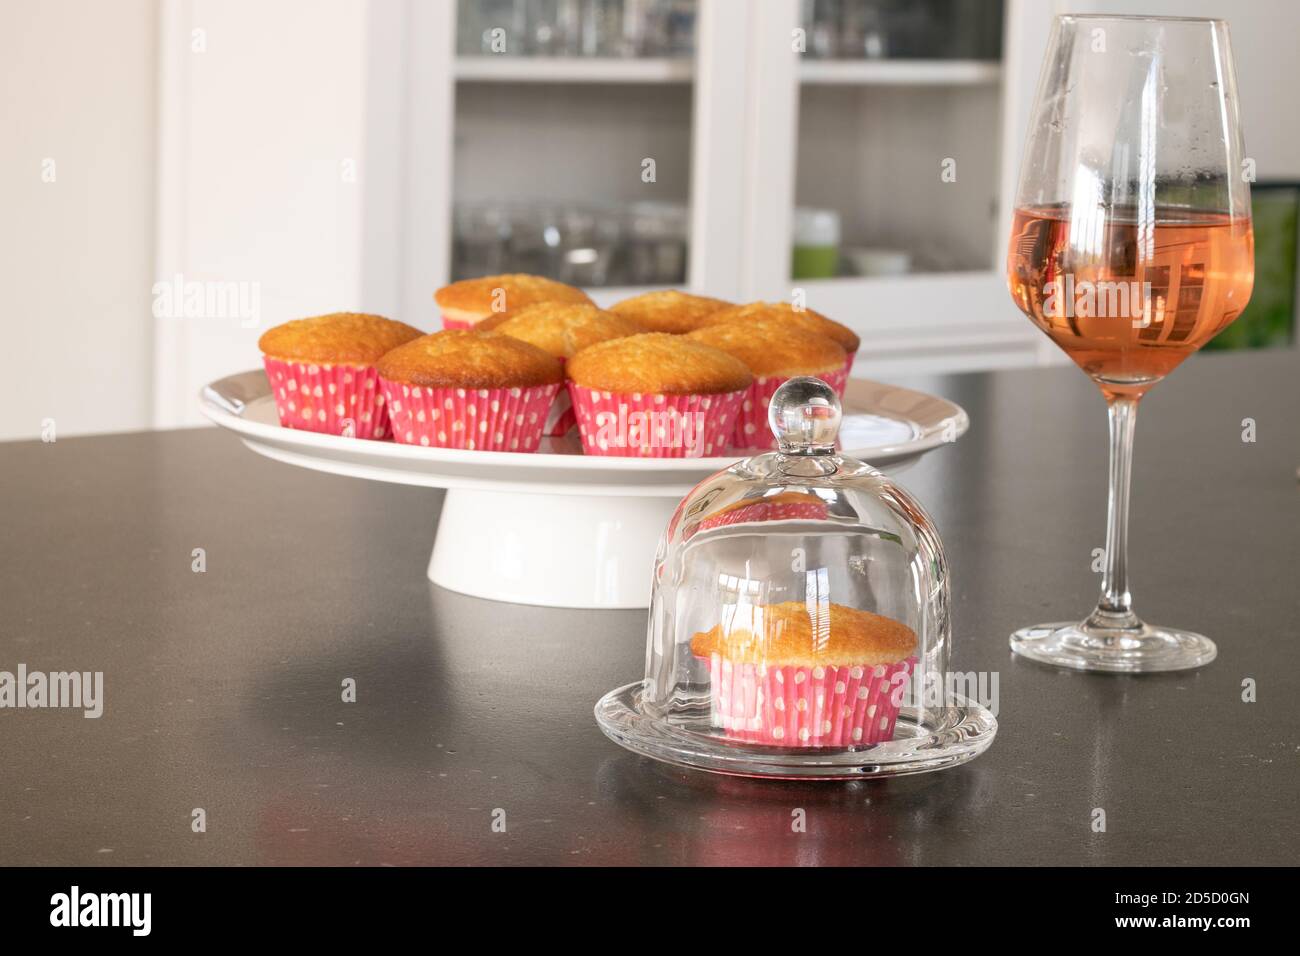 Cupcakes caseros horneados en un plato blanco o cristal y en un fondo oscuro de mesa, tazas rosadas con puntos de color blanco, cupcakes simples sin decoración. Inicio Foto de stock